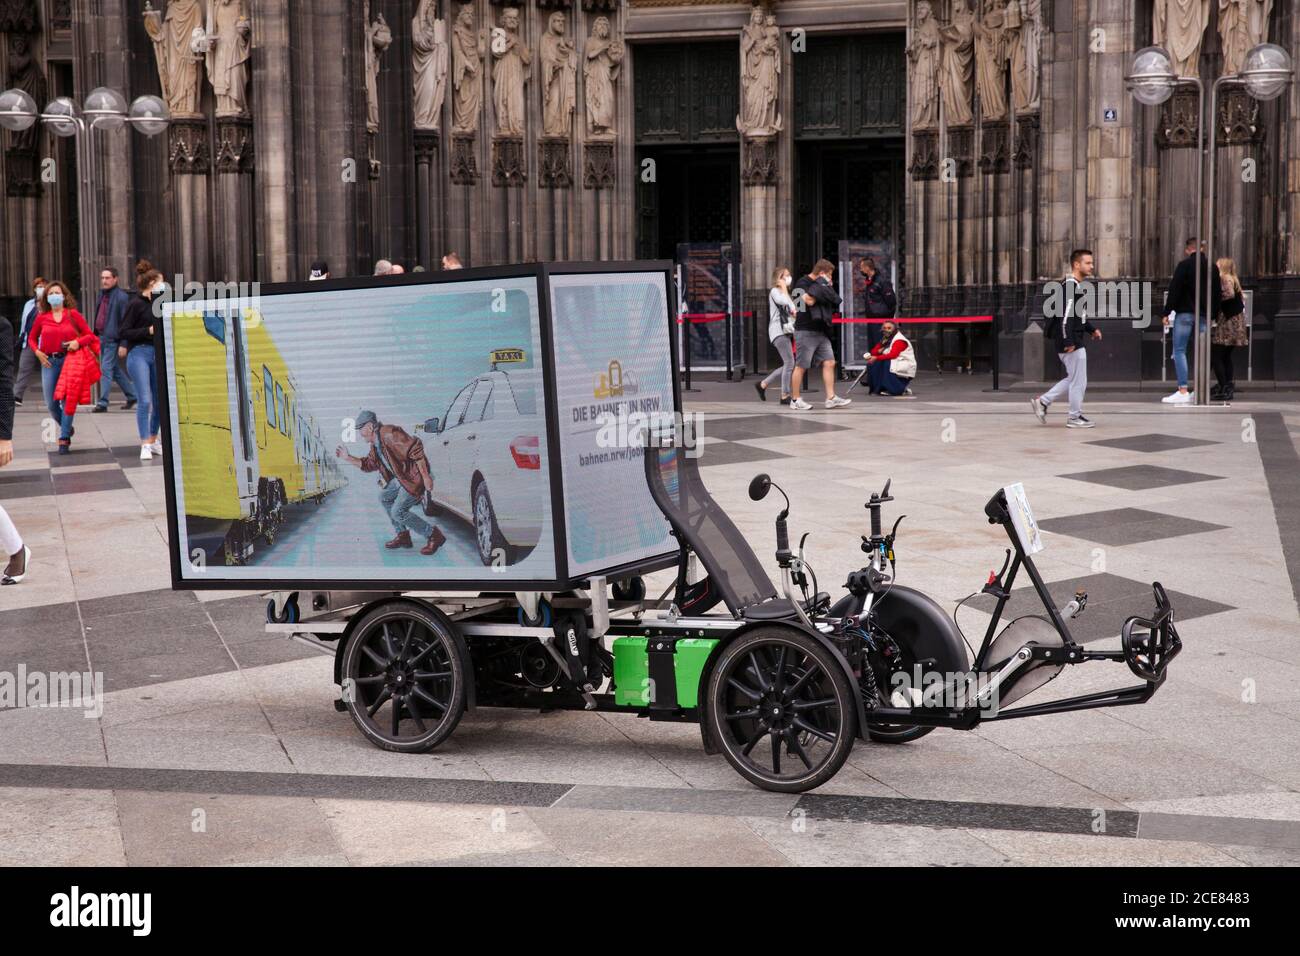 Bicicleta eléctrica (trike) con pantalla digital LED de 360 grados para publicidad móvil al aire libre frente a la catedral, Colonia, Alemania Foto de stock